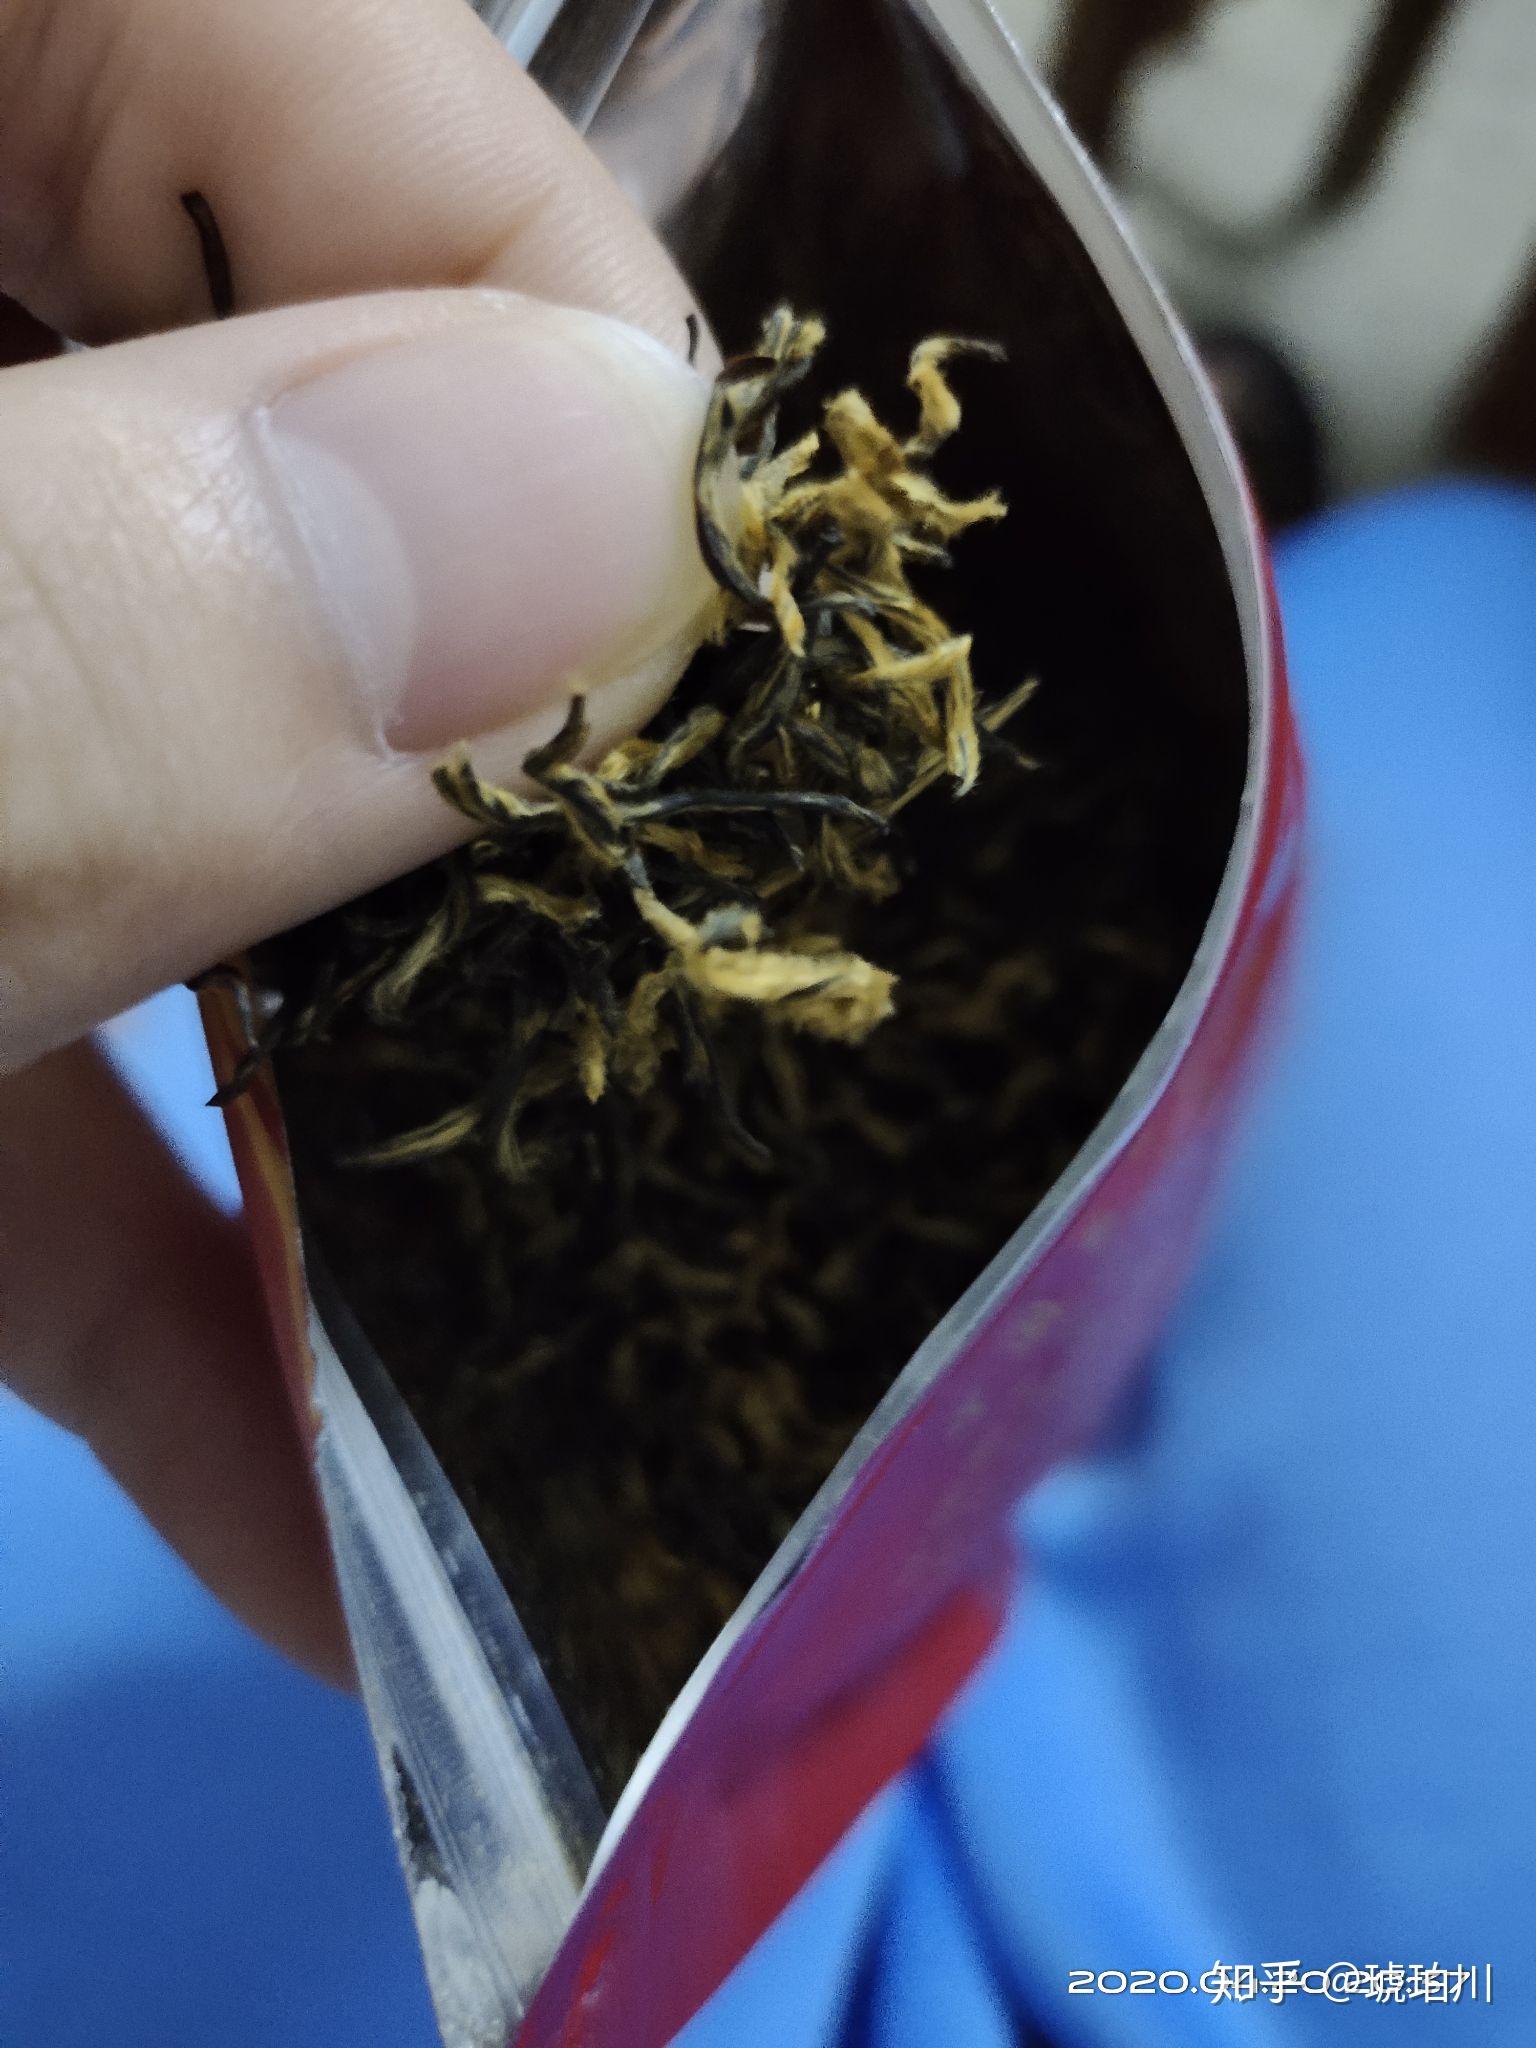 没开封的红茶为什么会有一种毛毛的像发霉一样的粉末? 